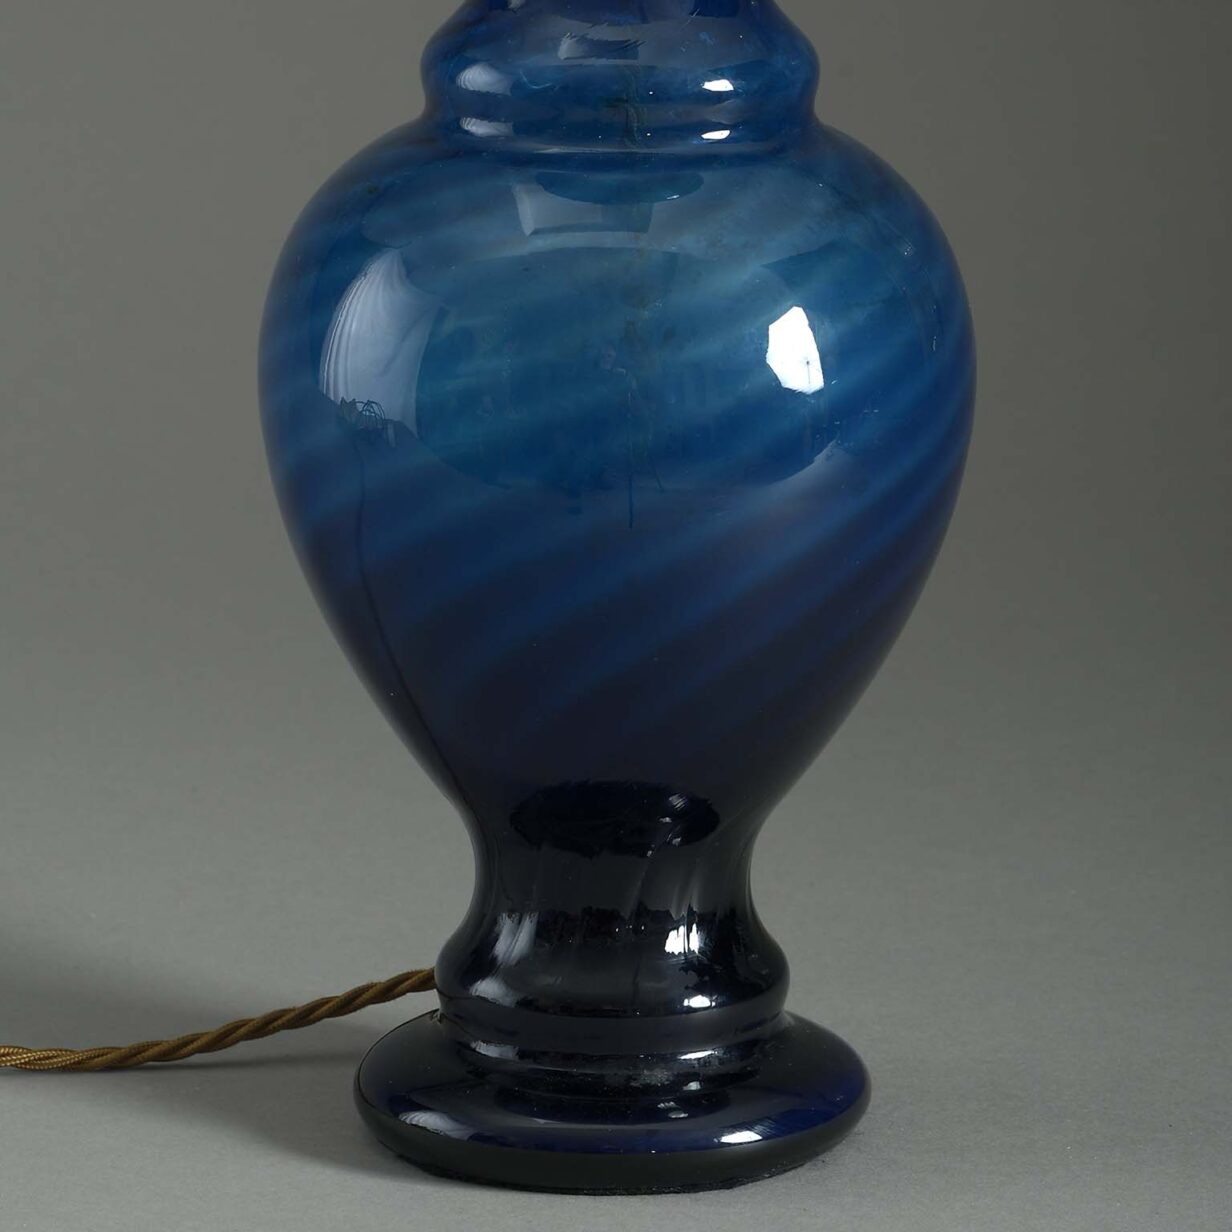 Blue glass vase lamp